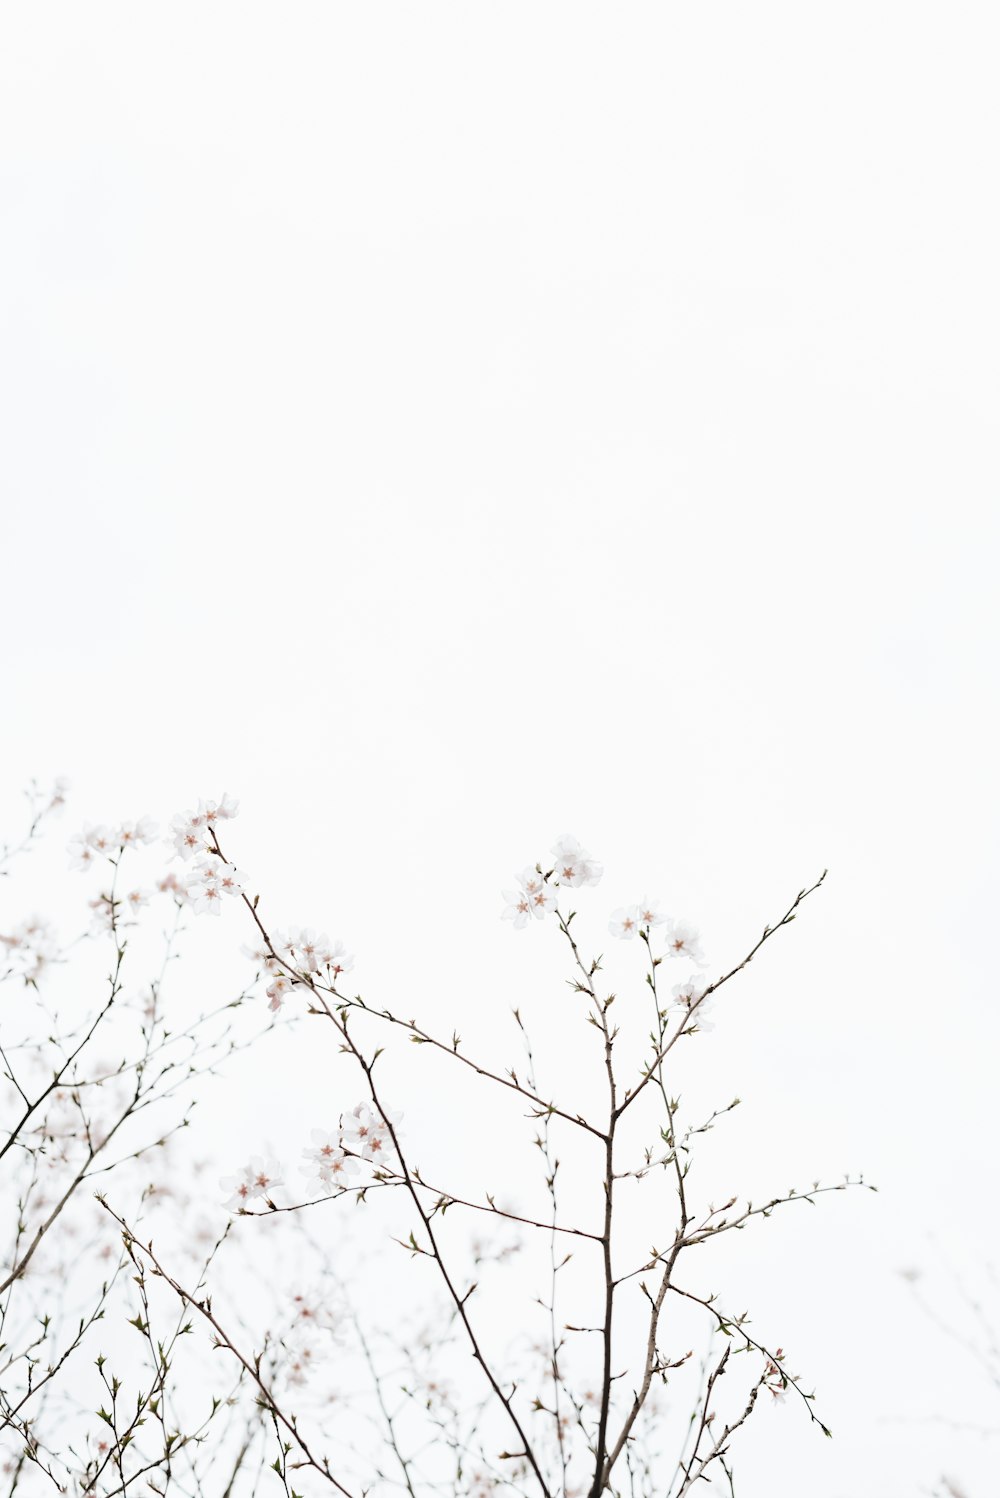 Lưu giữ những khoảnh khắc xinh đẹp của mùa xuân với những bức hình hoa anh đào trắng tinh khôi đầy nghệ thuật.